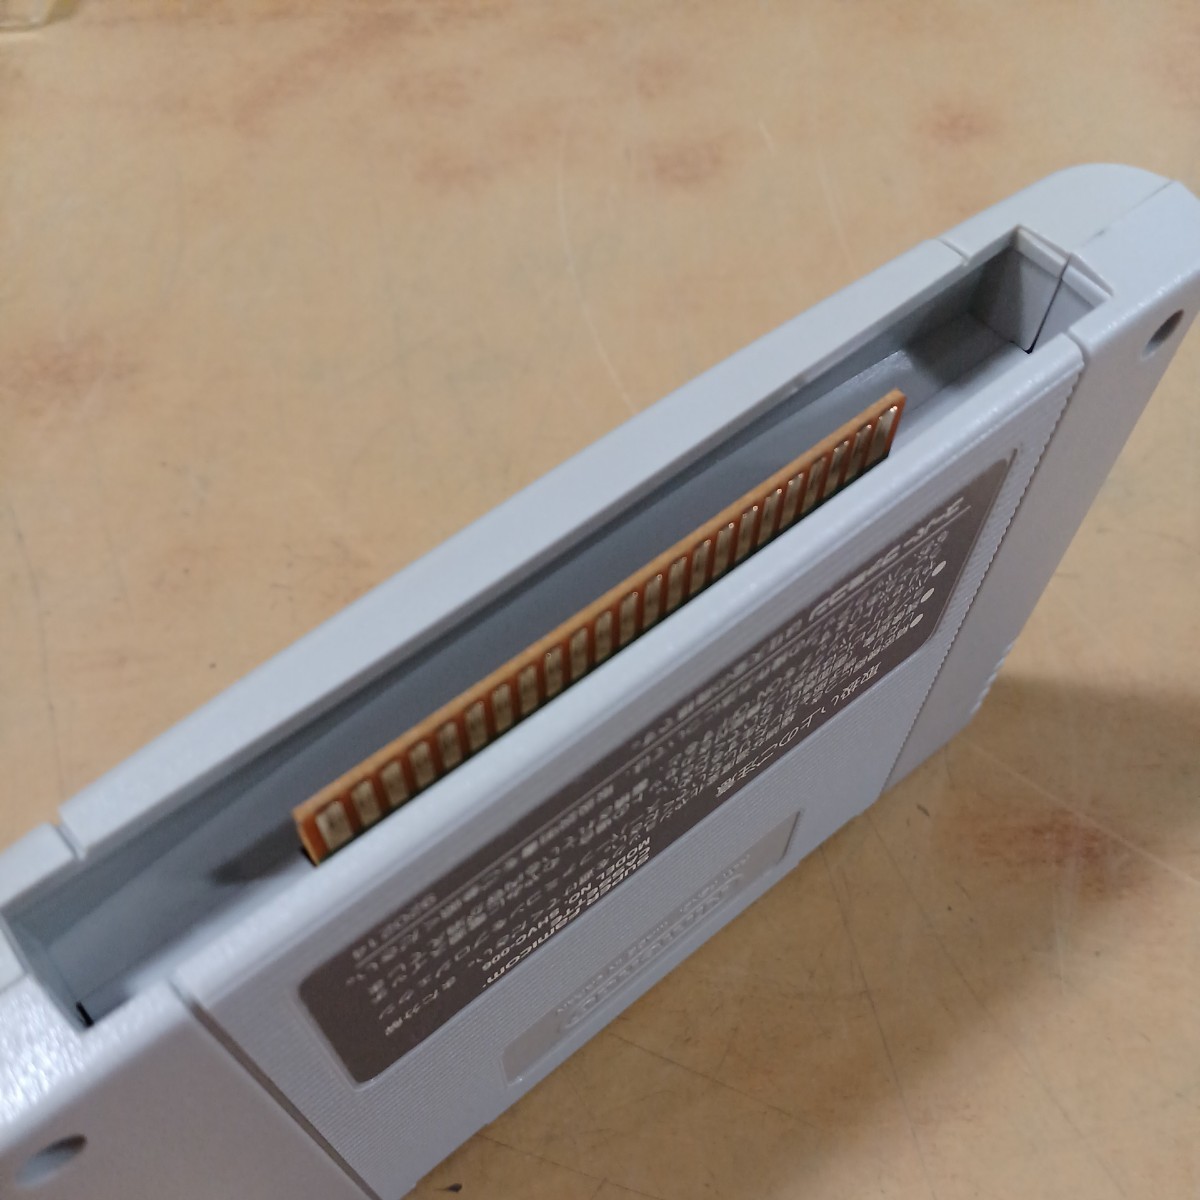 SFC Super Famicom игровой автомат обязательно . закон! HEIWA патинко world 2 позиций комплект soft подлинная вещь б/у долгосрочное хранение 